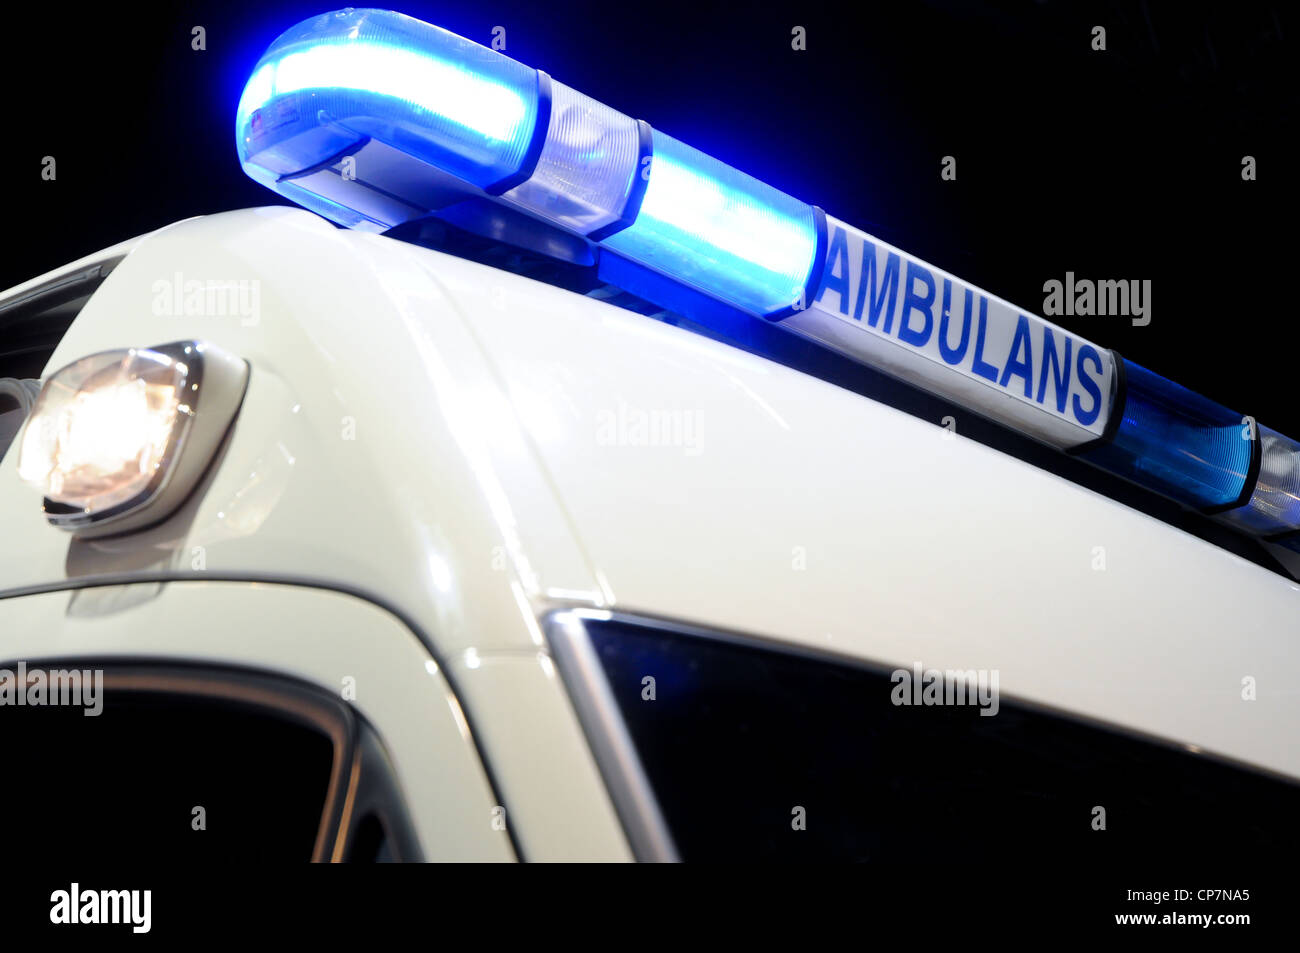 blue ambulance emergency light Stock Photo